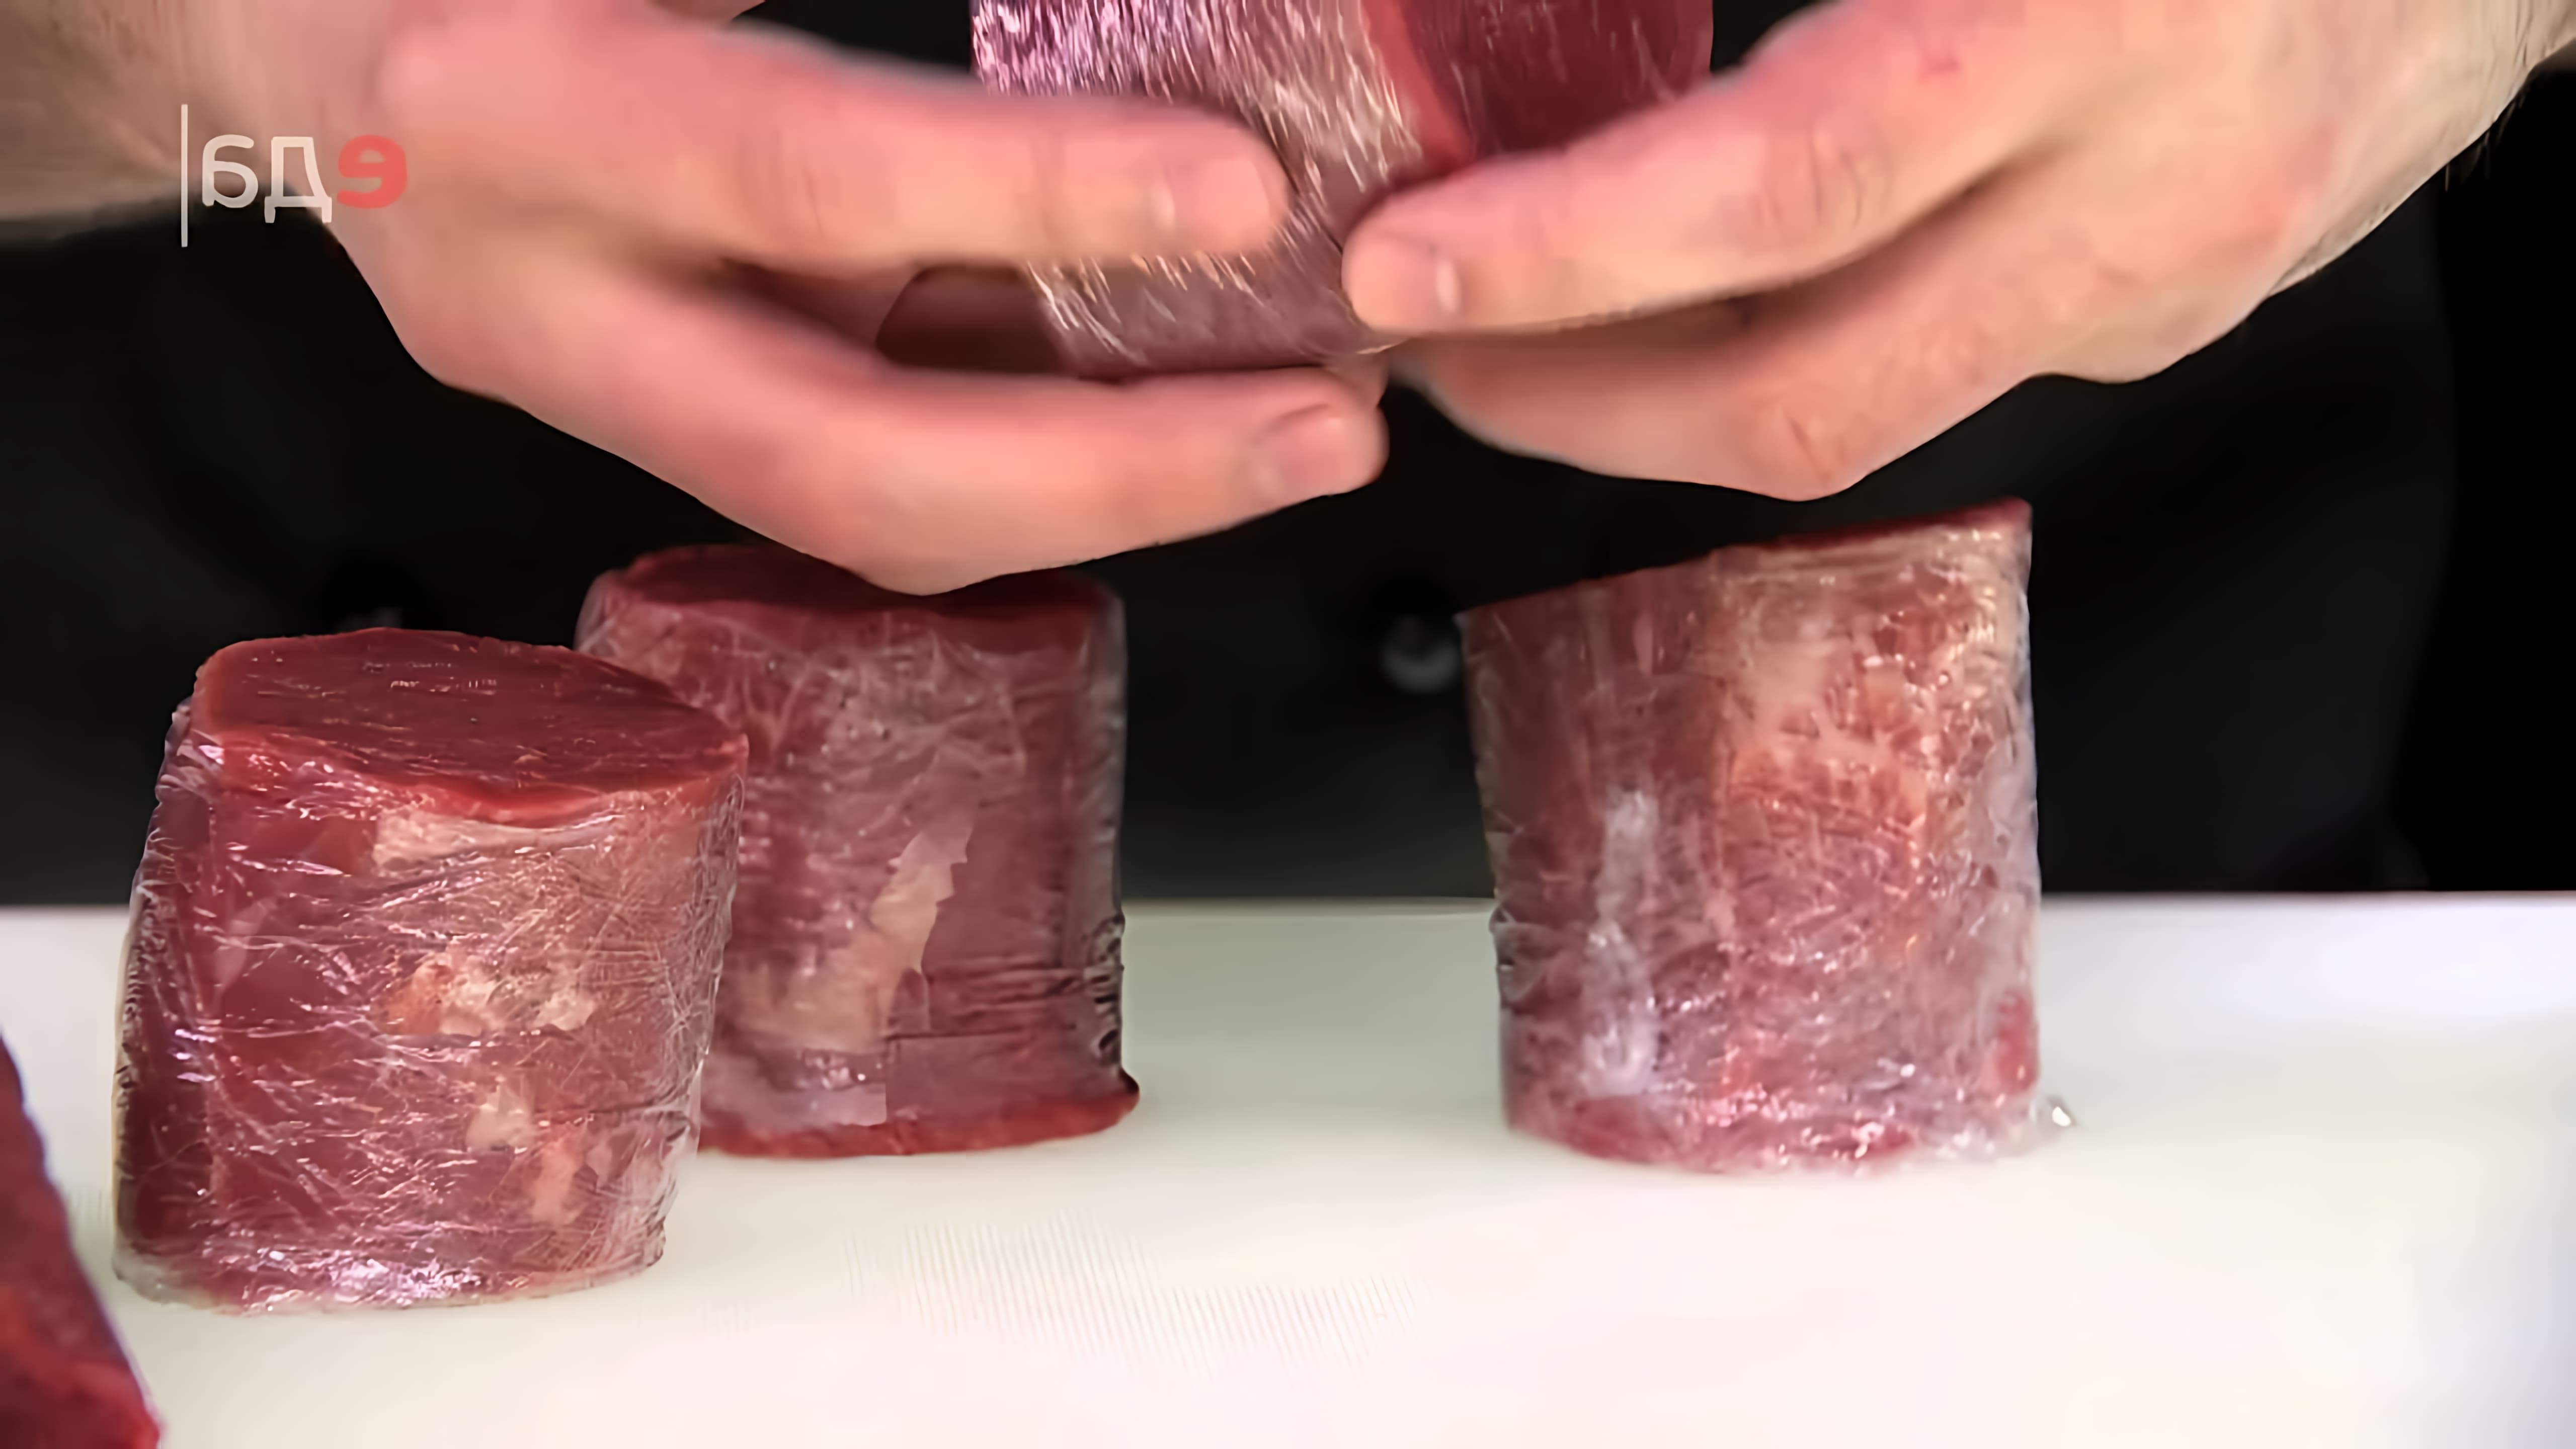 В данном видео демонстрируется процесс разделки говяжьей вырезки на различные части